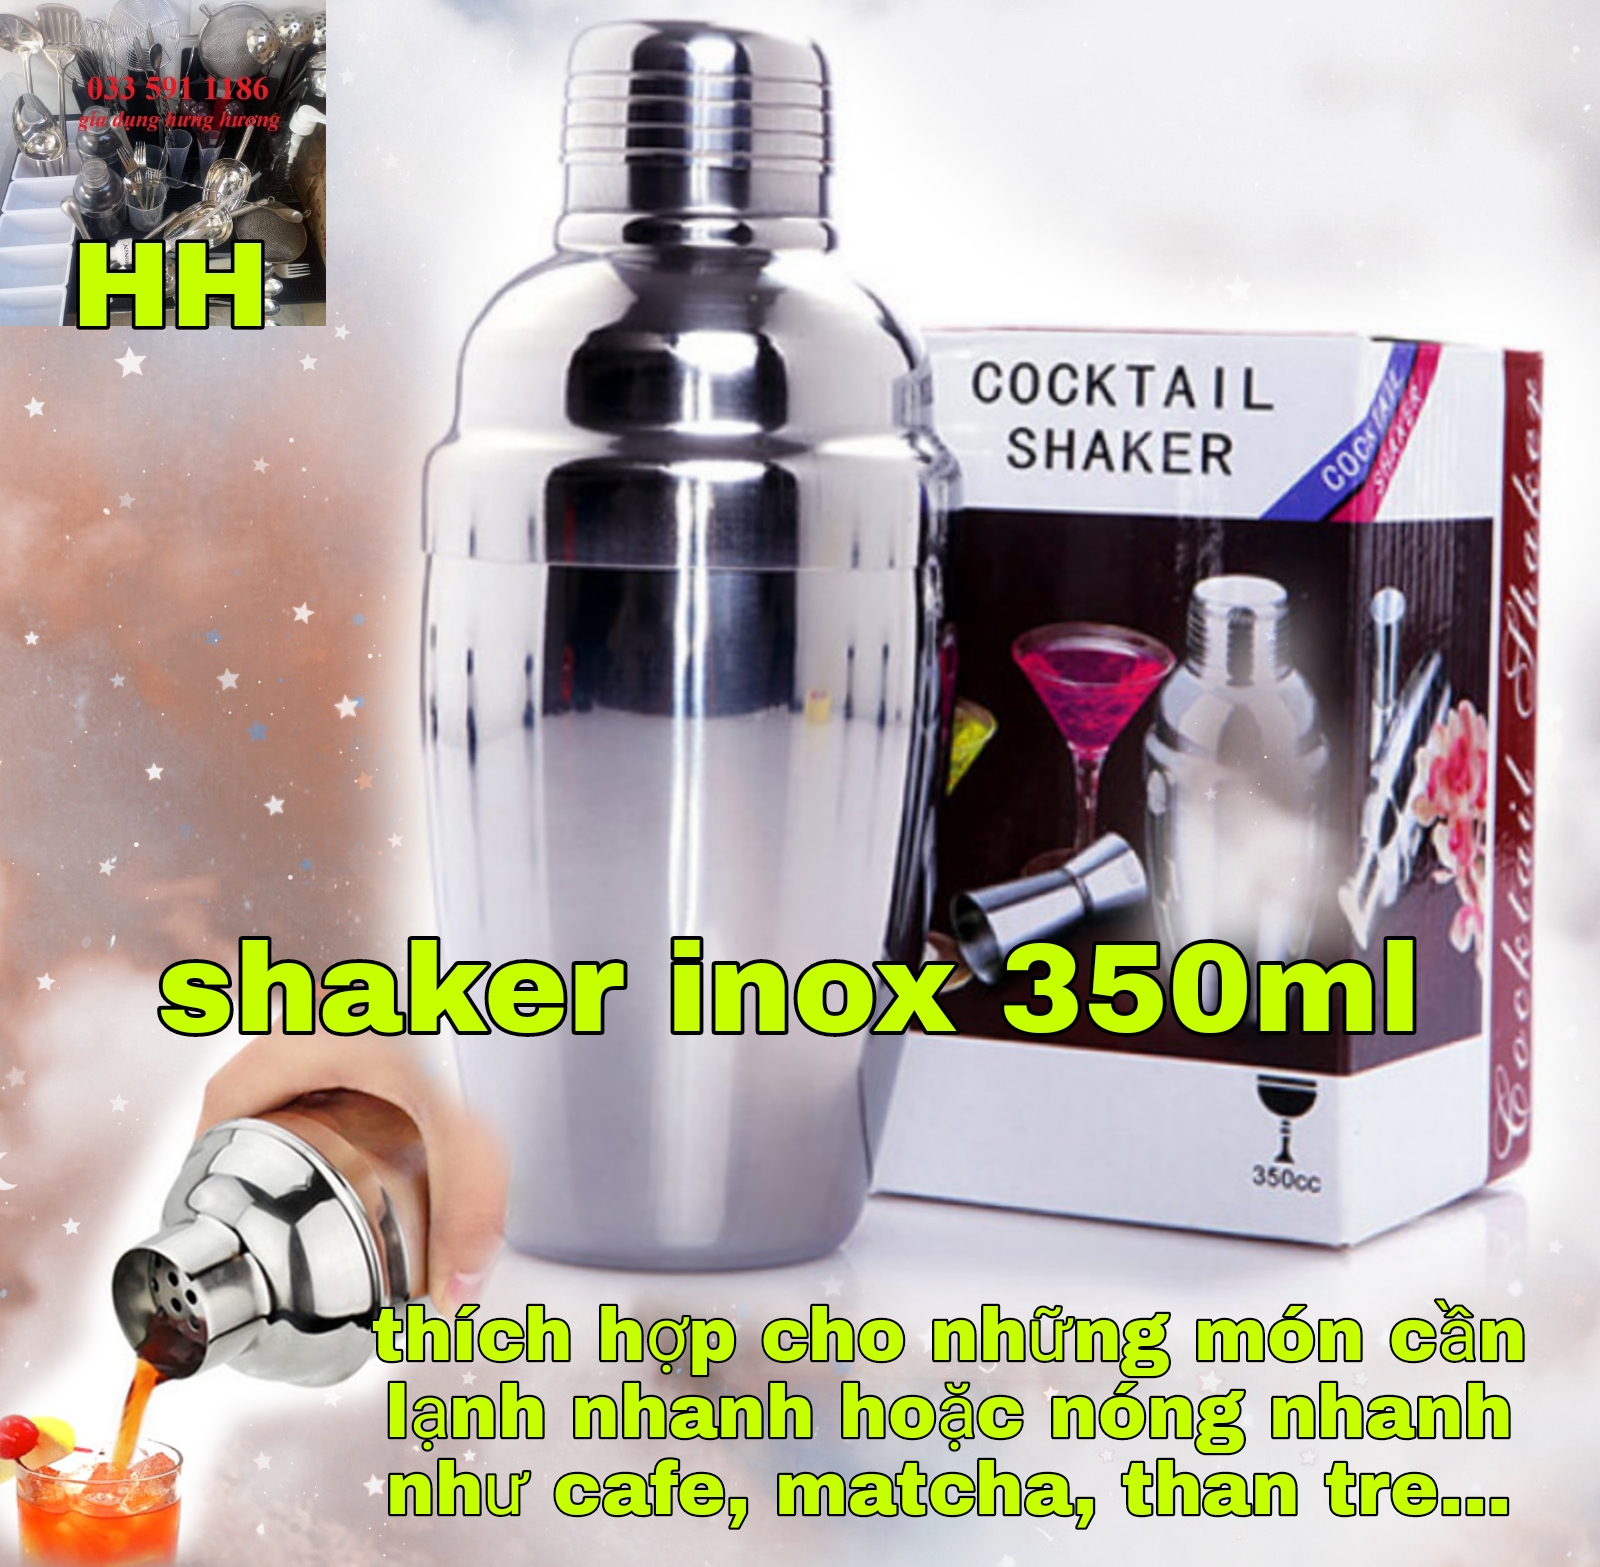 Bình shaker inox - bình lắc inox - bình shake inox pha chế cocktail trà sữa đủ các cỡ 350ml-550ml-750ml đẹp